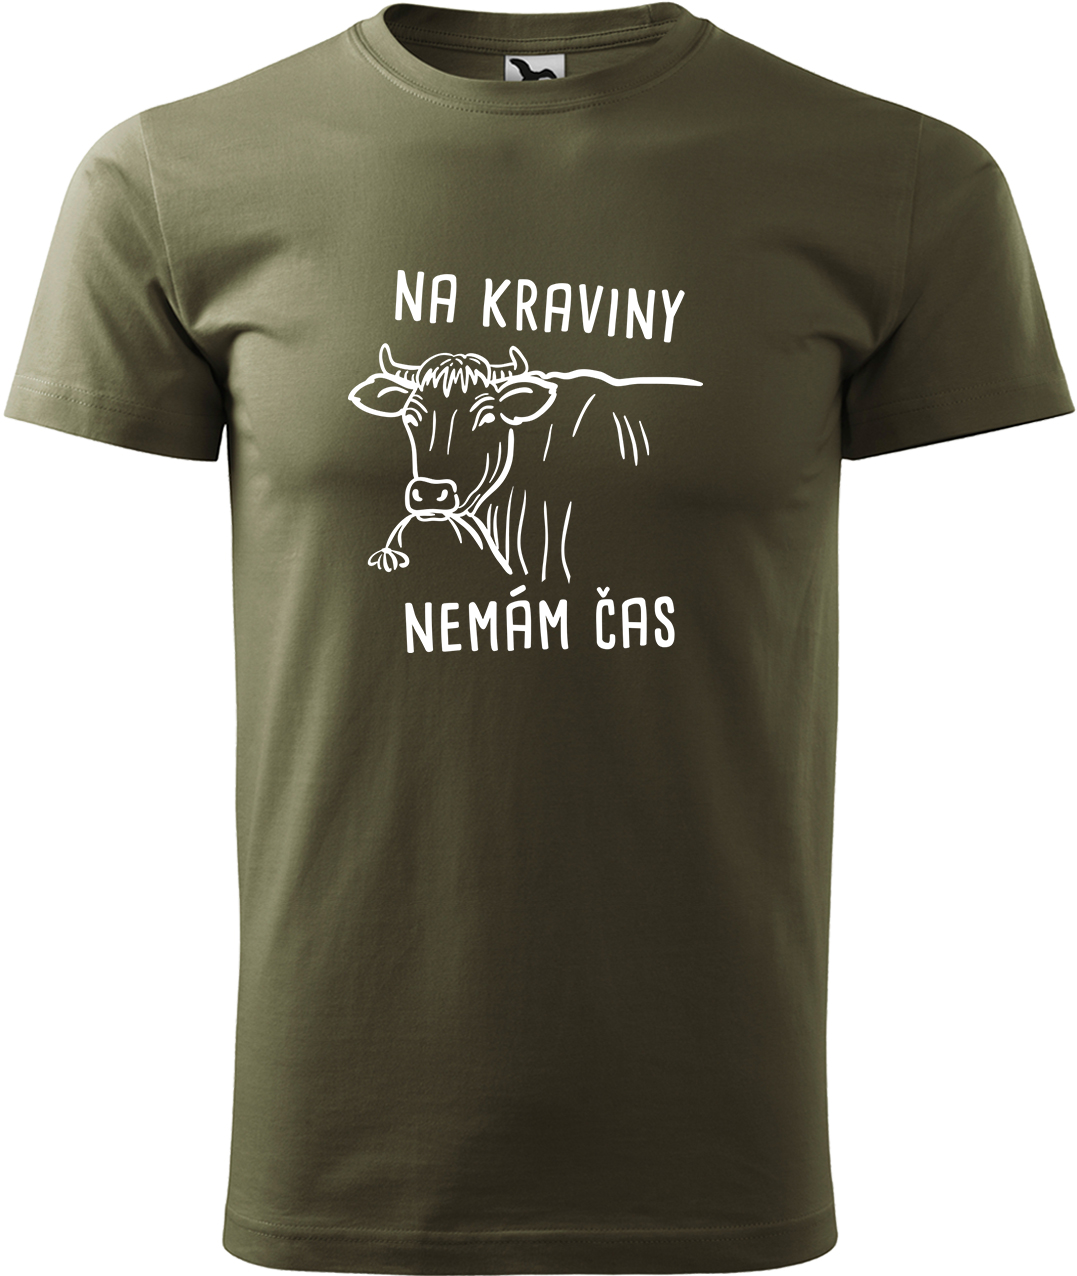 Pánské tričko s krávou - Na kraviny nemám čas Velikost: 4XL, Barva: Military (69), Střih: pánský